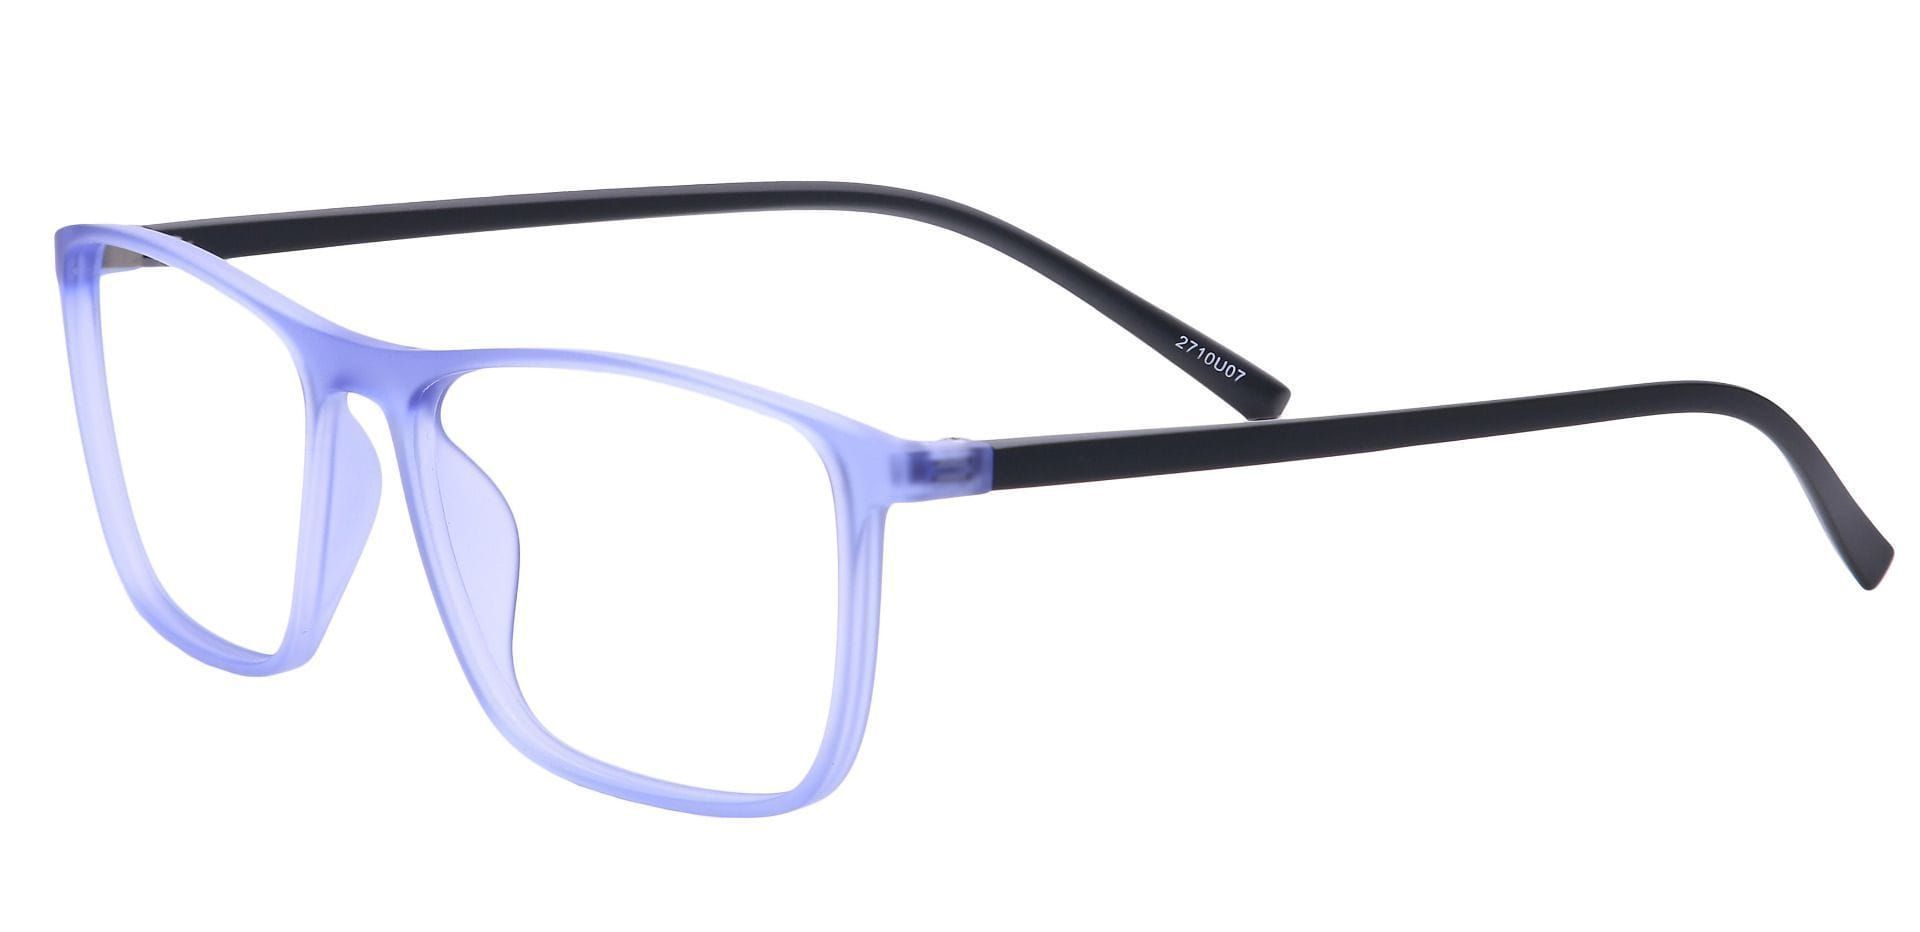 Candid Rectangle Eyeglasses Frame - Blue